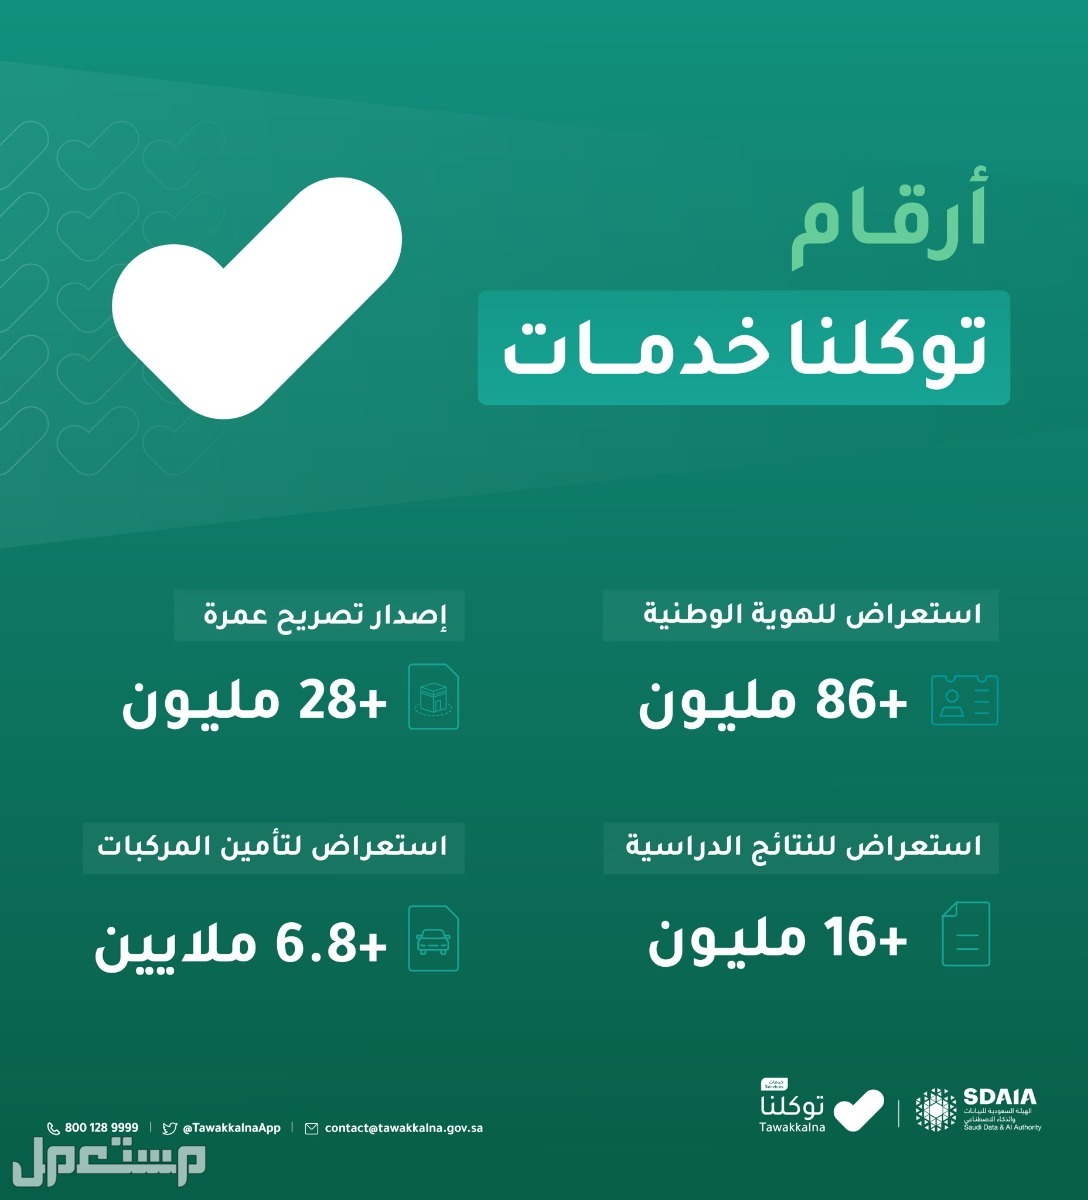 خطوات استعراض إعدادات الحساب في توكلنا خدمات في الأردن أرقام توكلنا